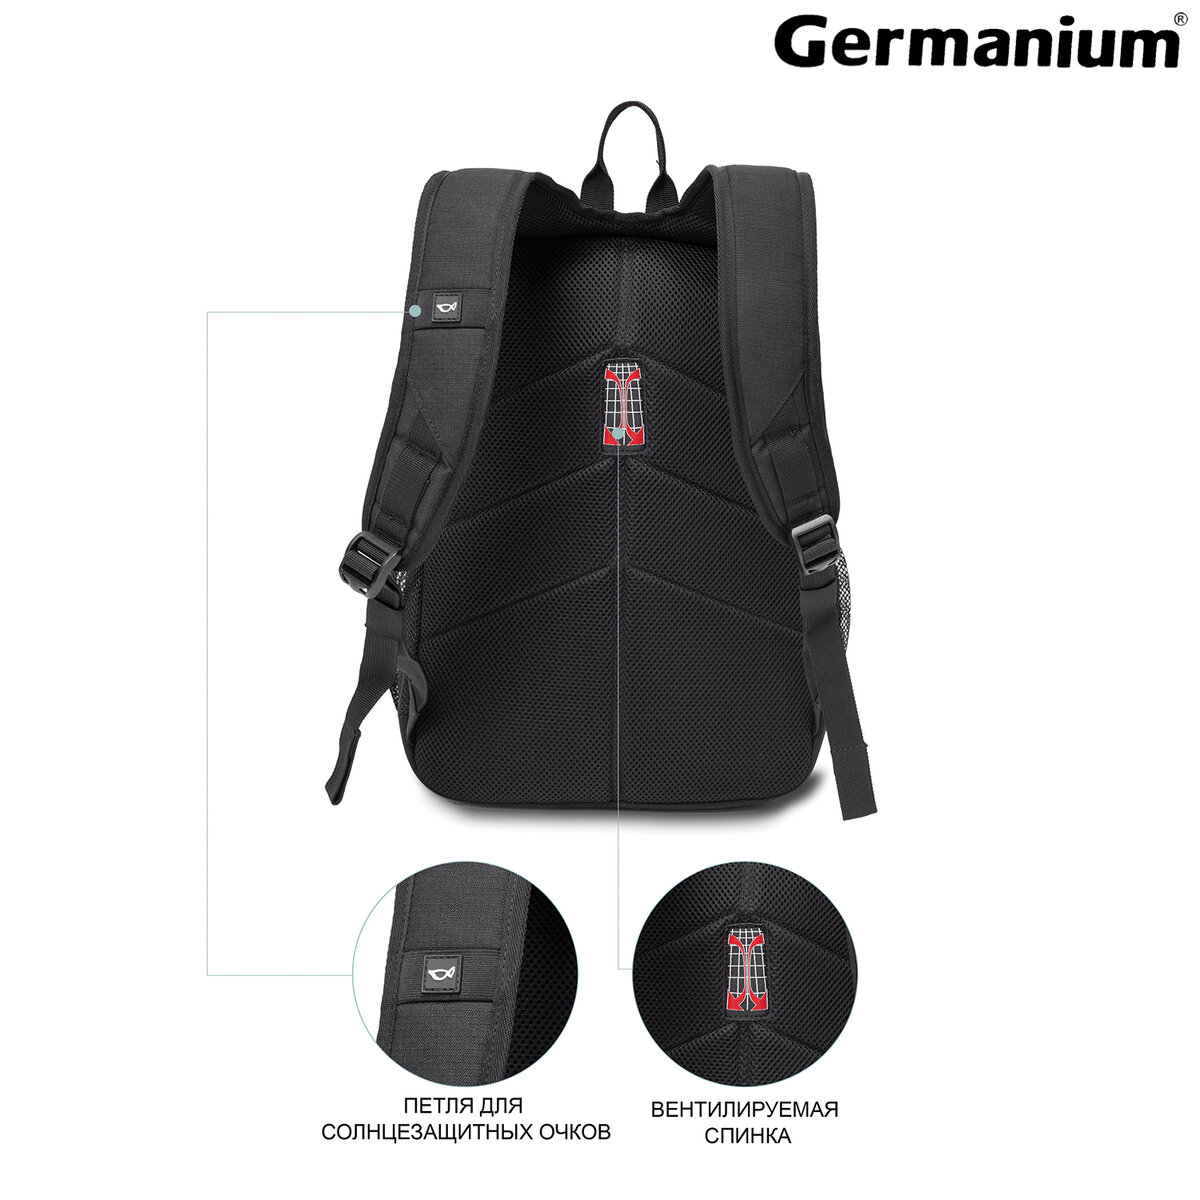 Рюкзак Germanium S-09 универсальный с отделением для ноутбука черный - фото 5